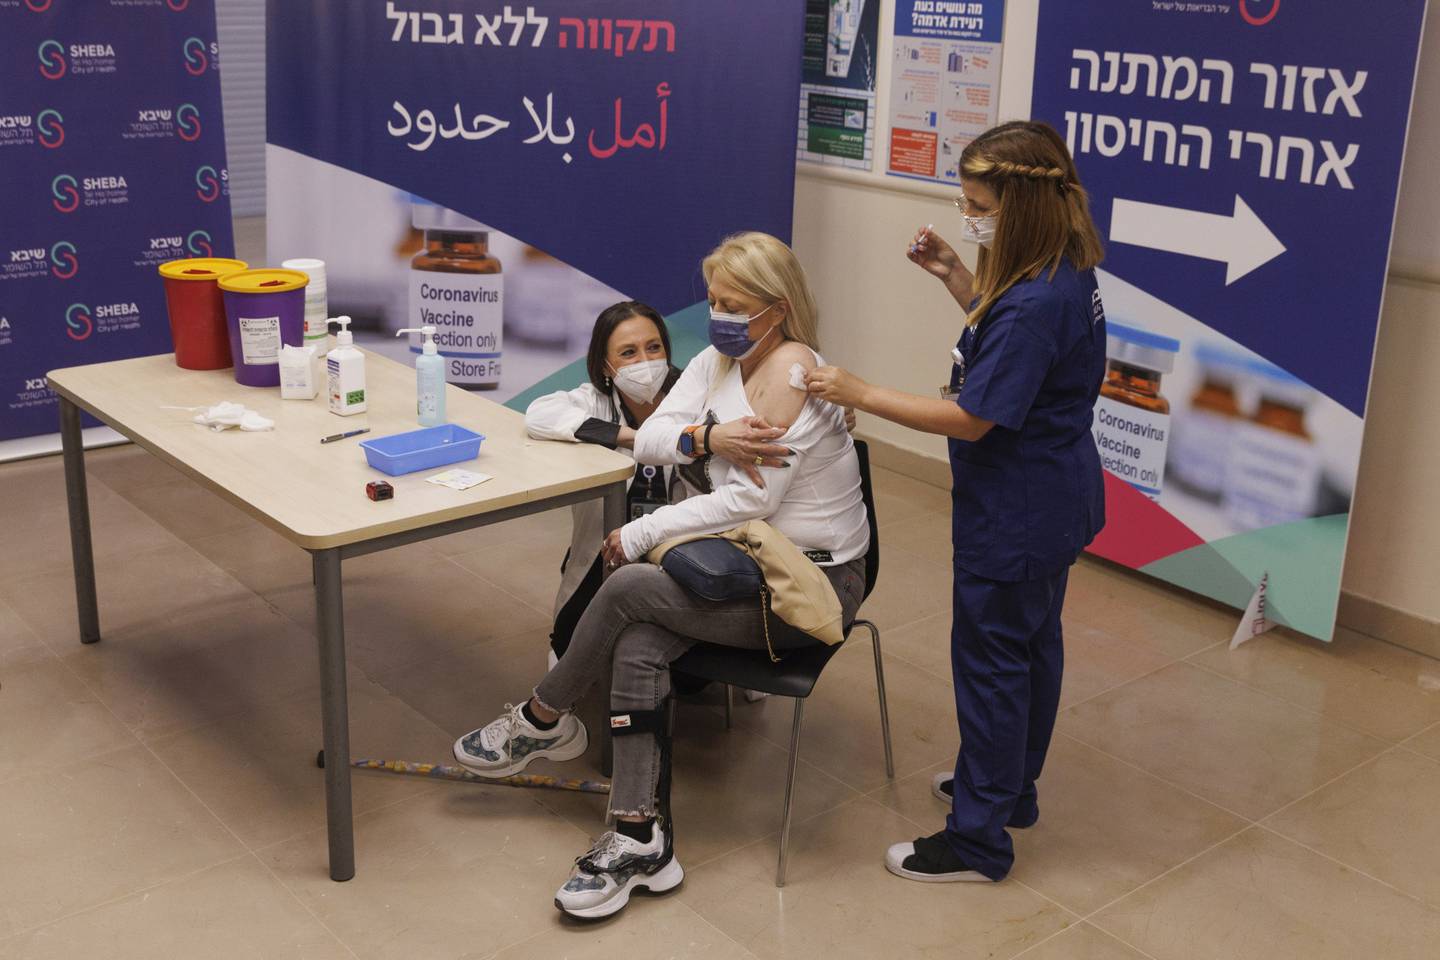 Un trabajador de la salud administra una cuarta dosis de la vacuna Pfizer-BioNTech covid-19 en el centro médico Sheba, en Ramat Gan, Israel, el 31 de diciembre de 2021.Fotógrafo: Kobi Wolf/Bloomberg